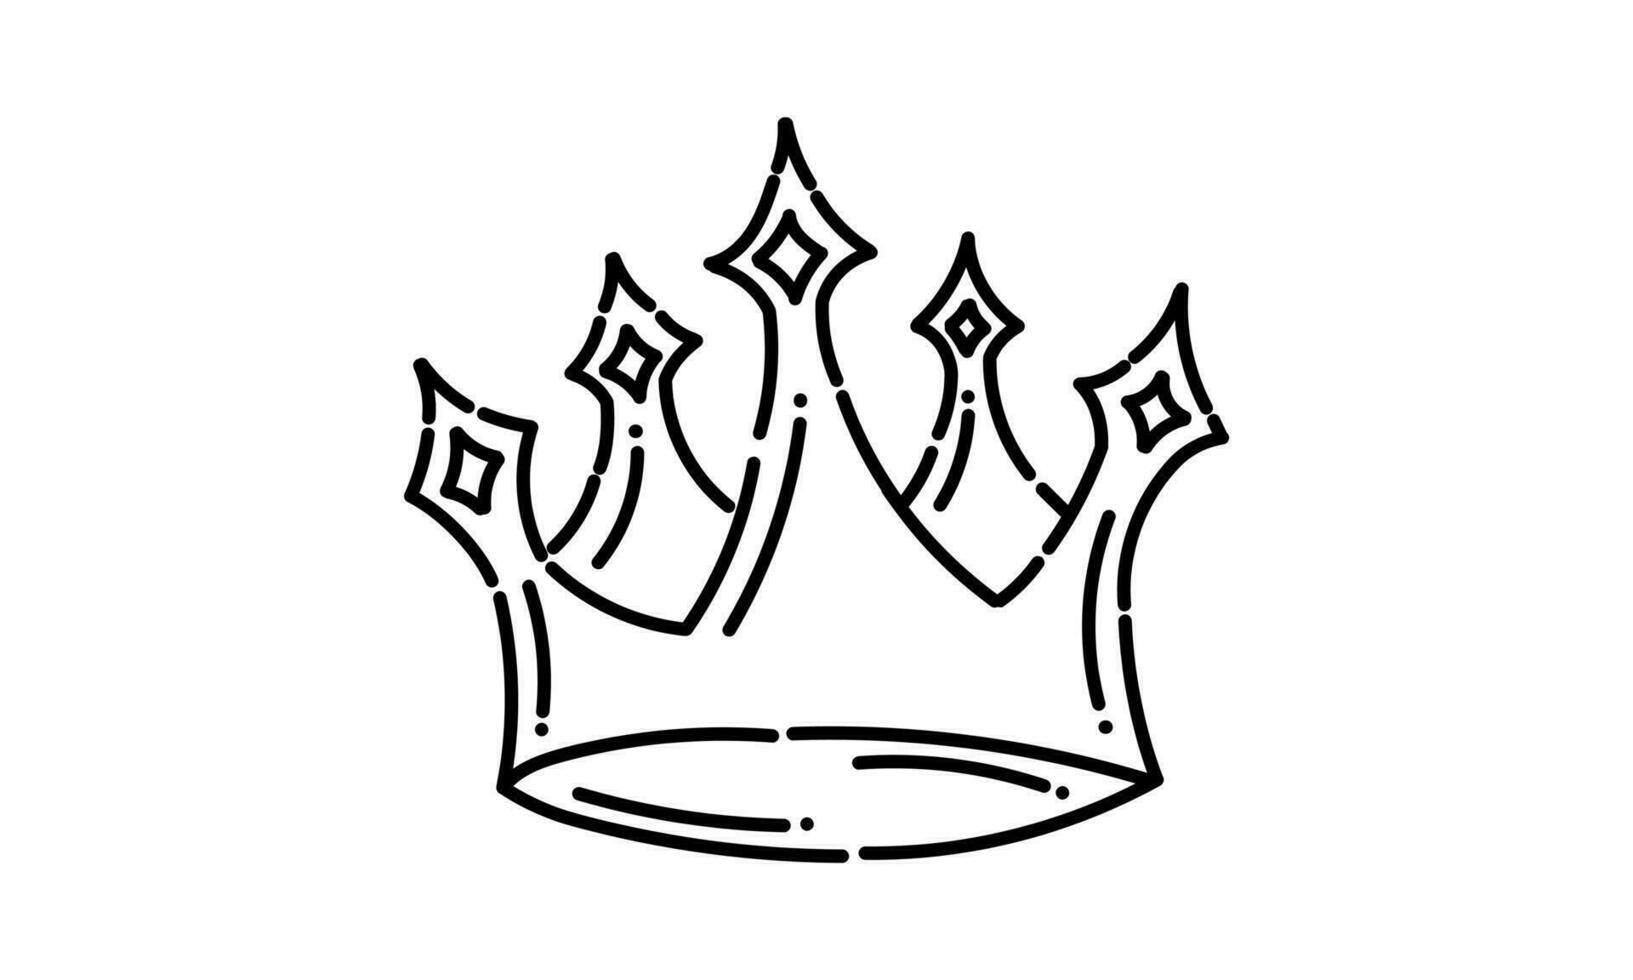 koningin kroon illustratie in stippel lijn stijl2 vector